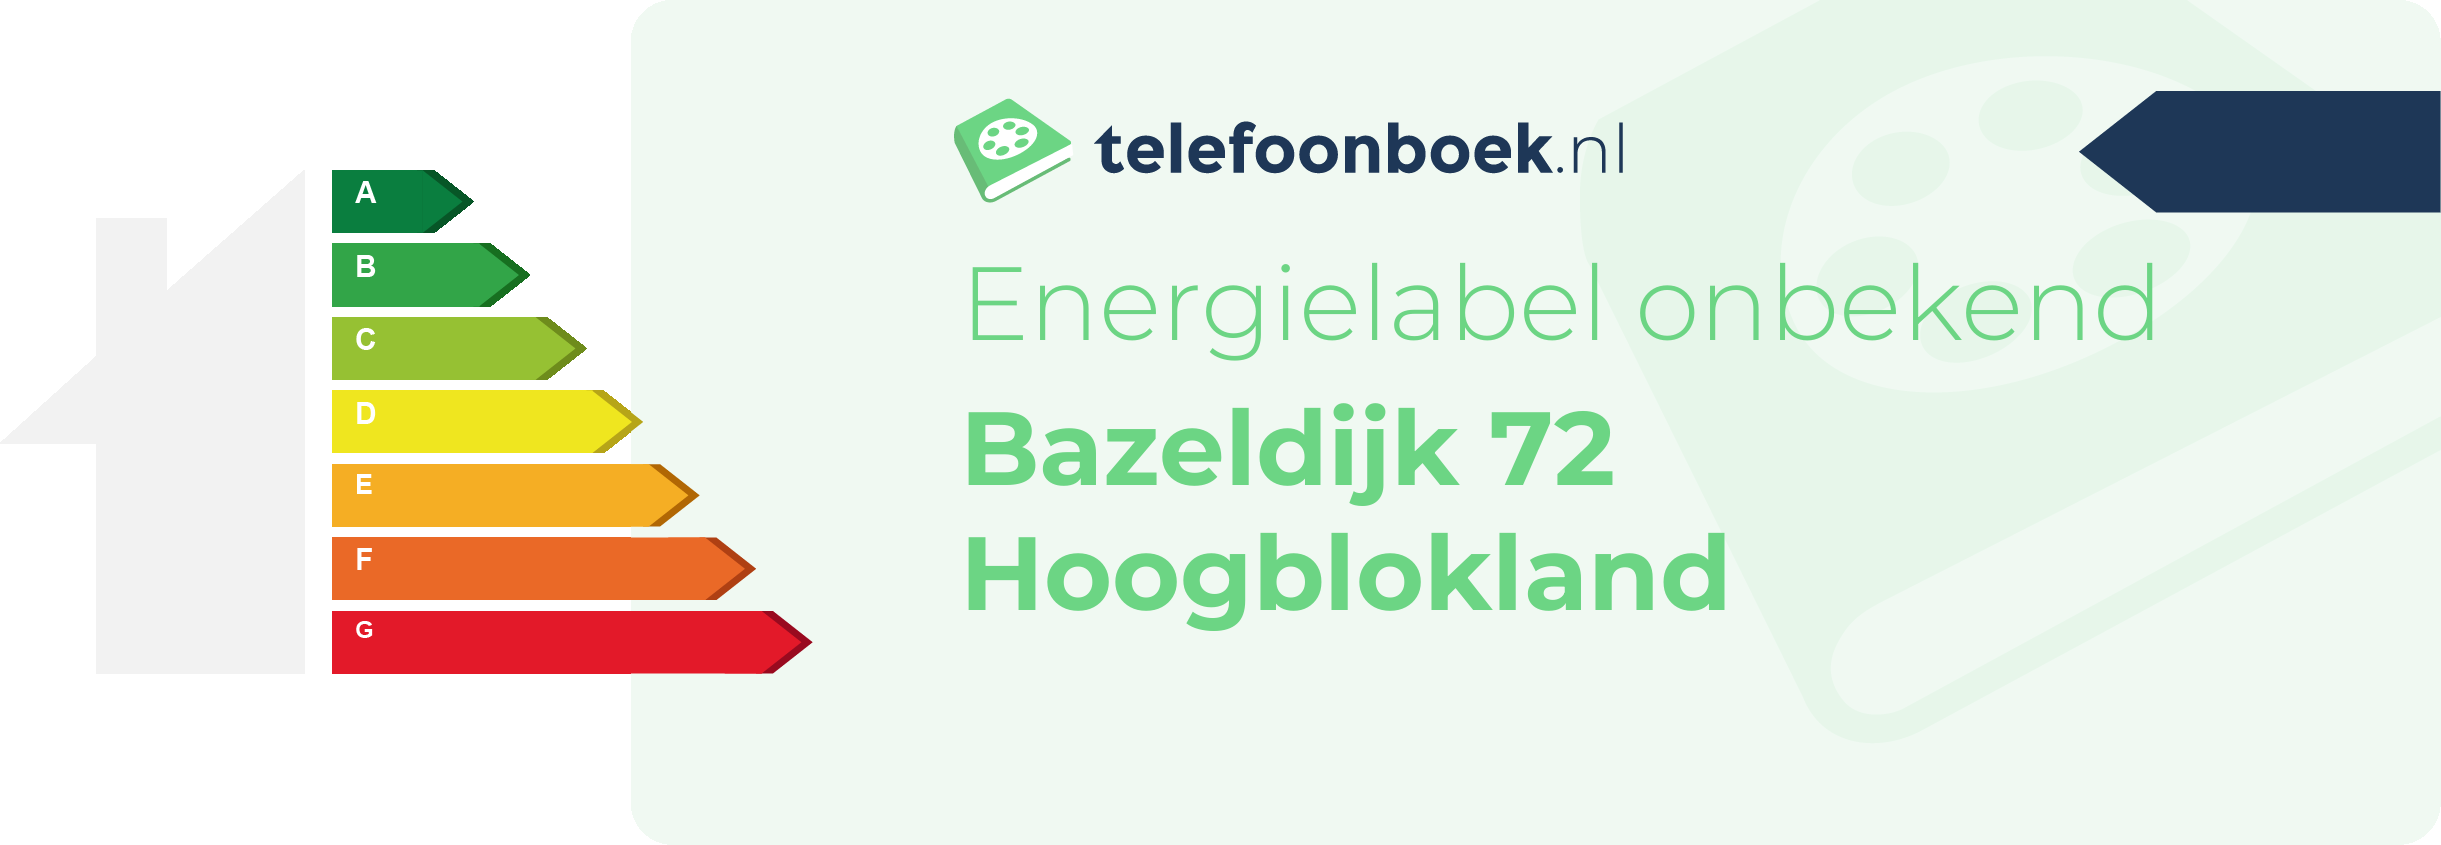 Energielabel Bazeldijk 72 Hoogblokland